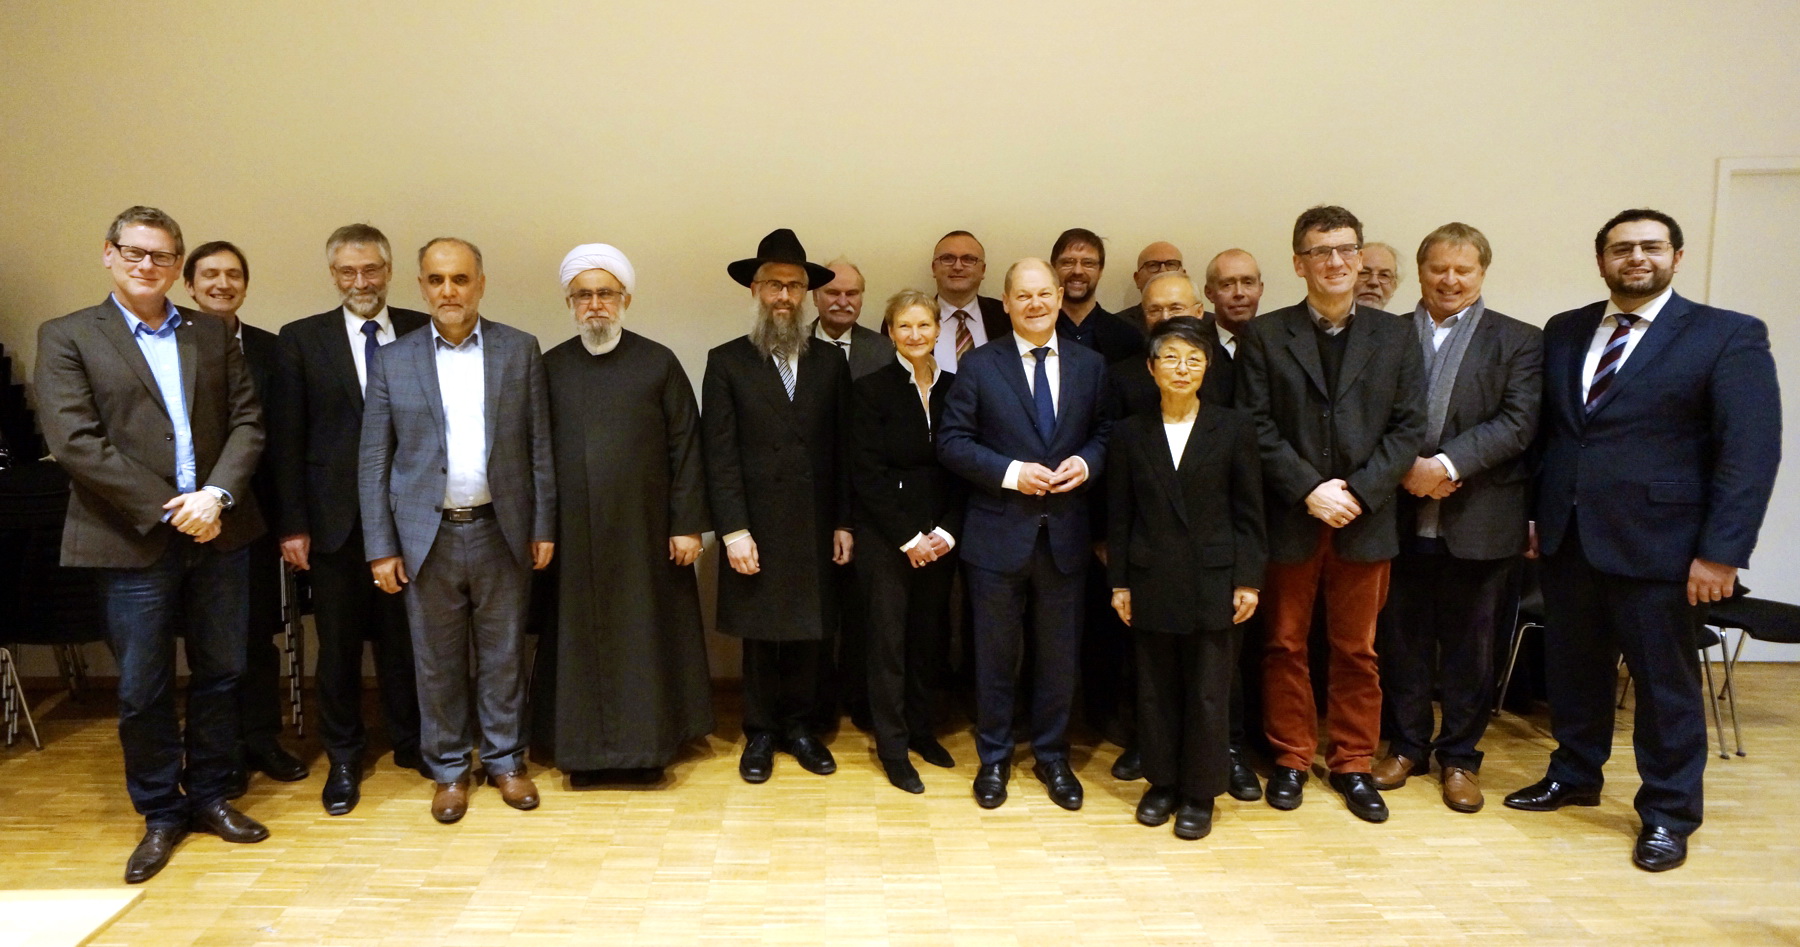 Das Islamsiche Zentrum Hamburg als Mitglied des Interreligiösen Forum Hamburgs